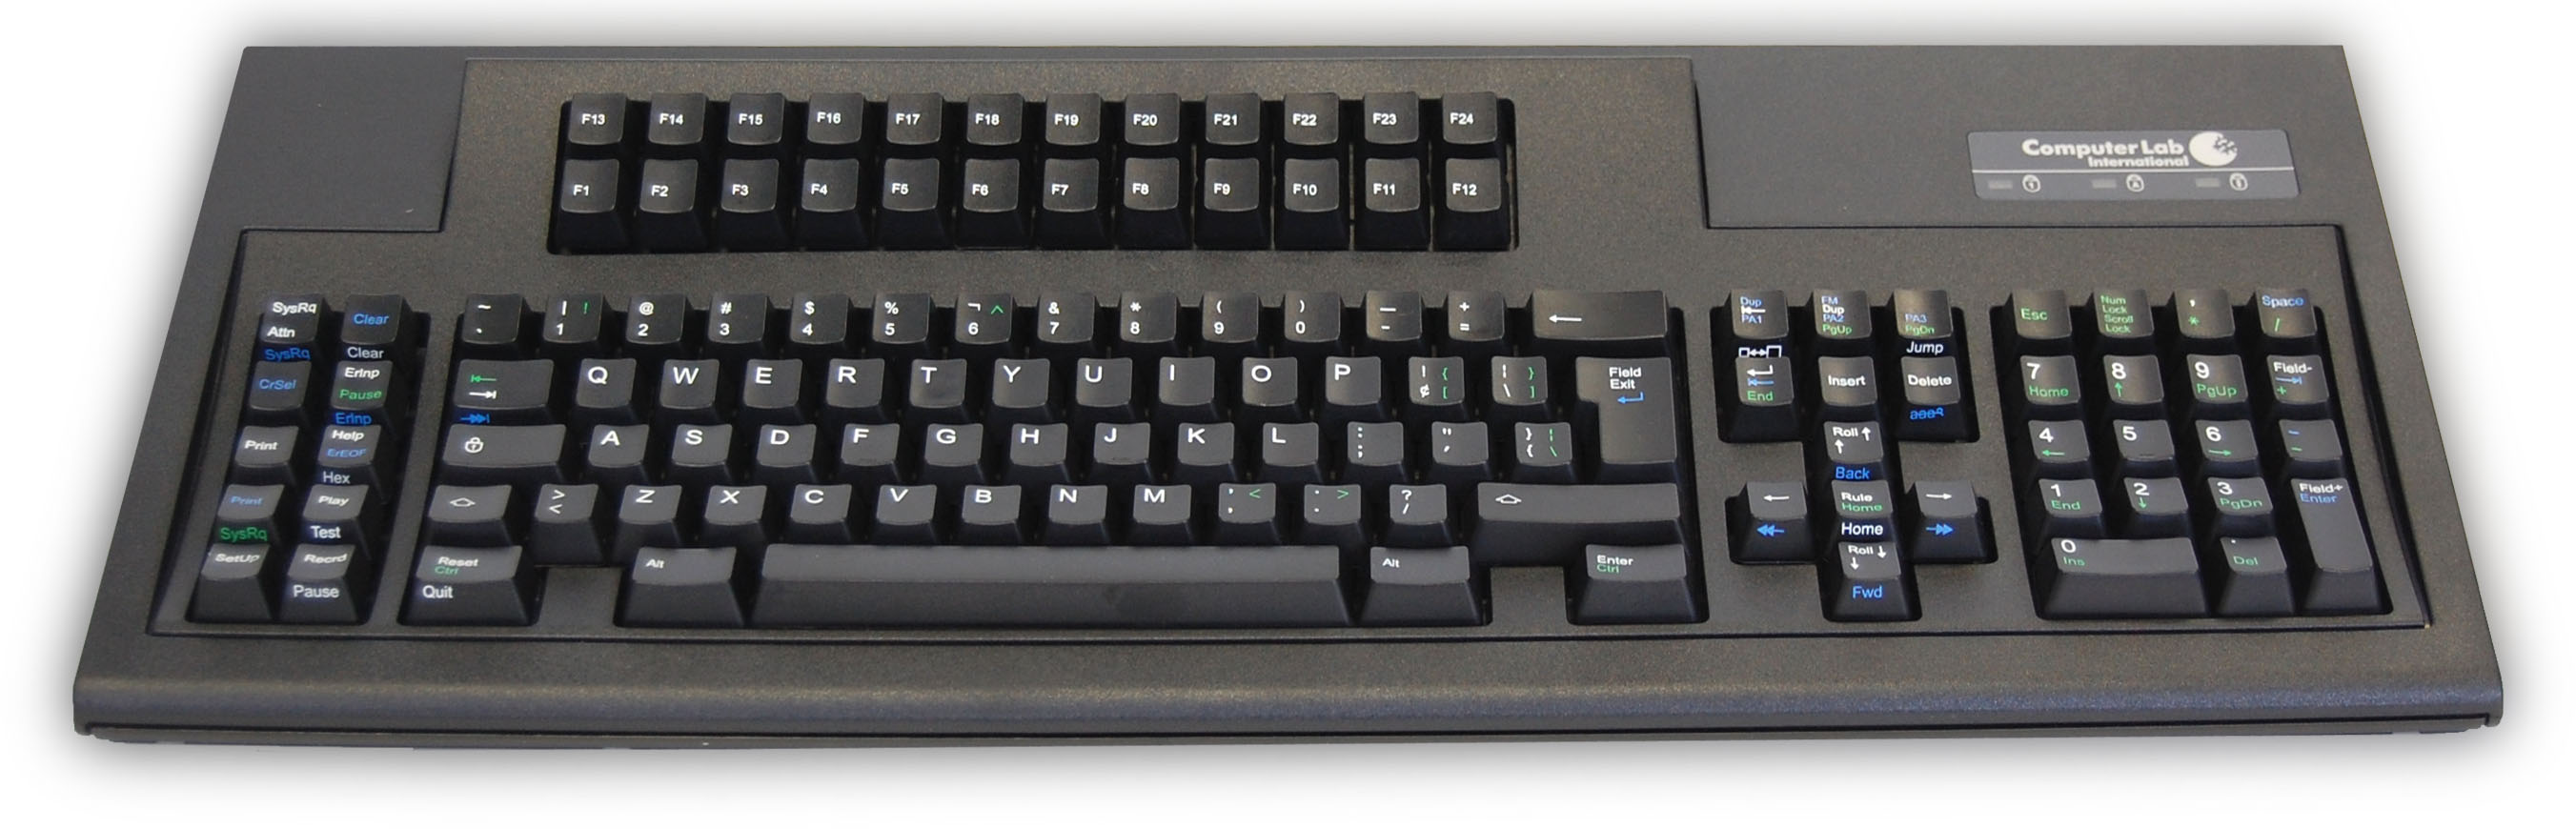 CLI-122 key keyboard